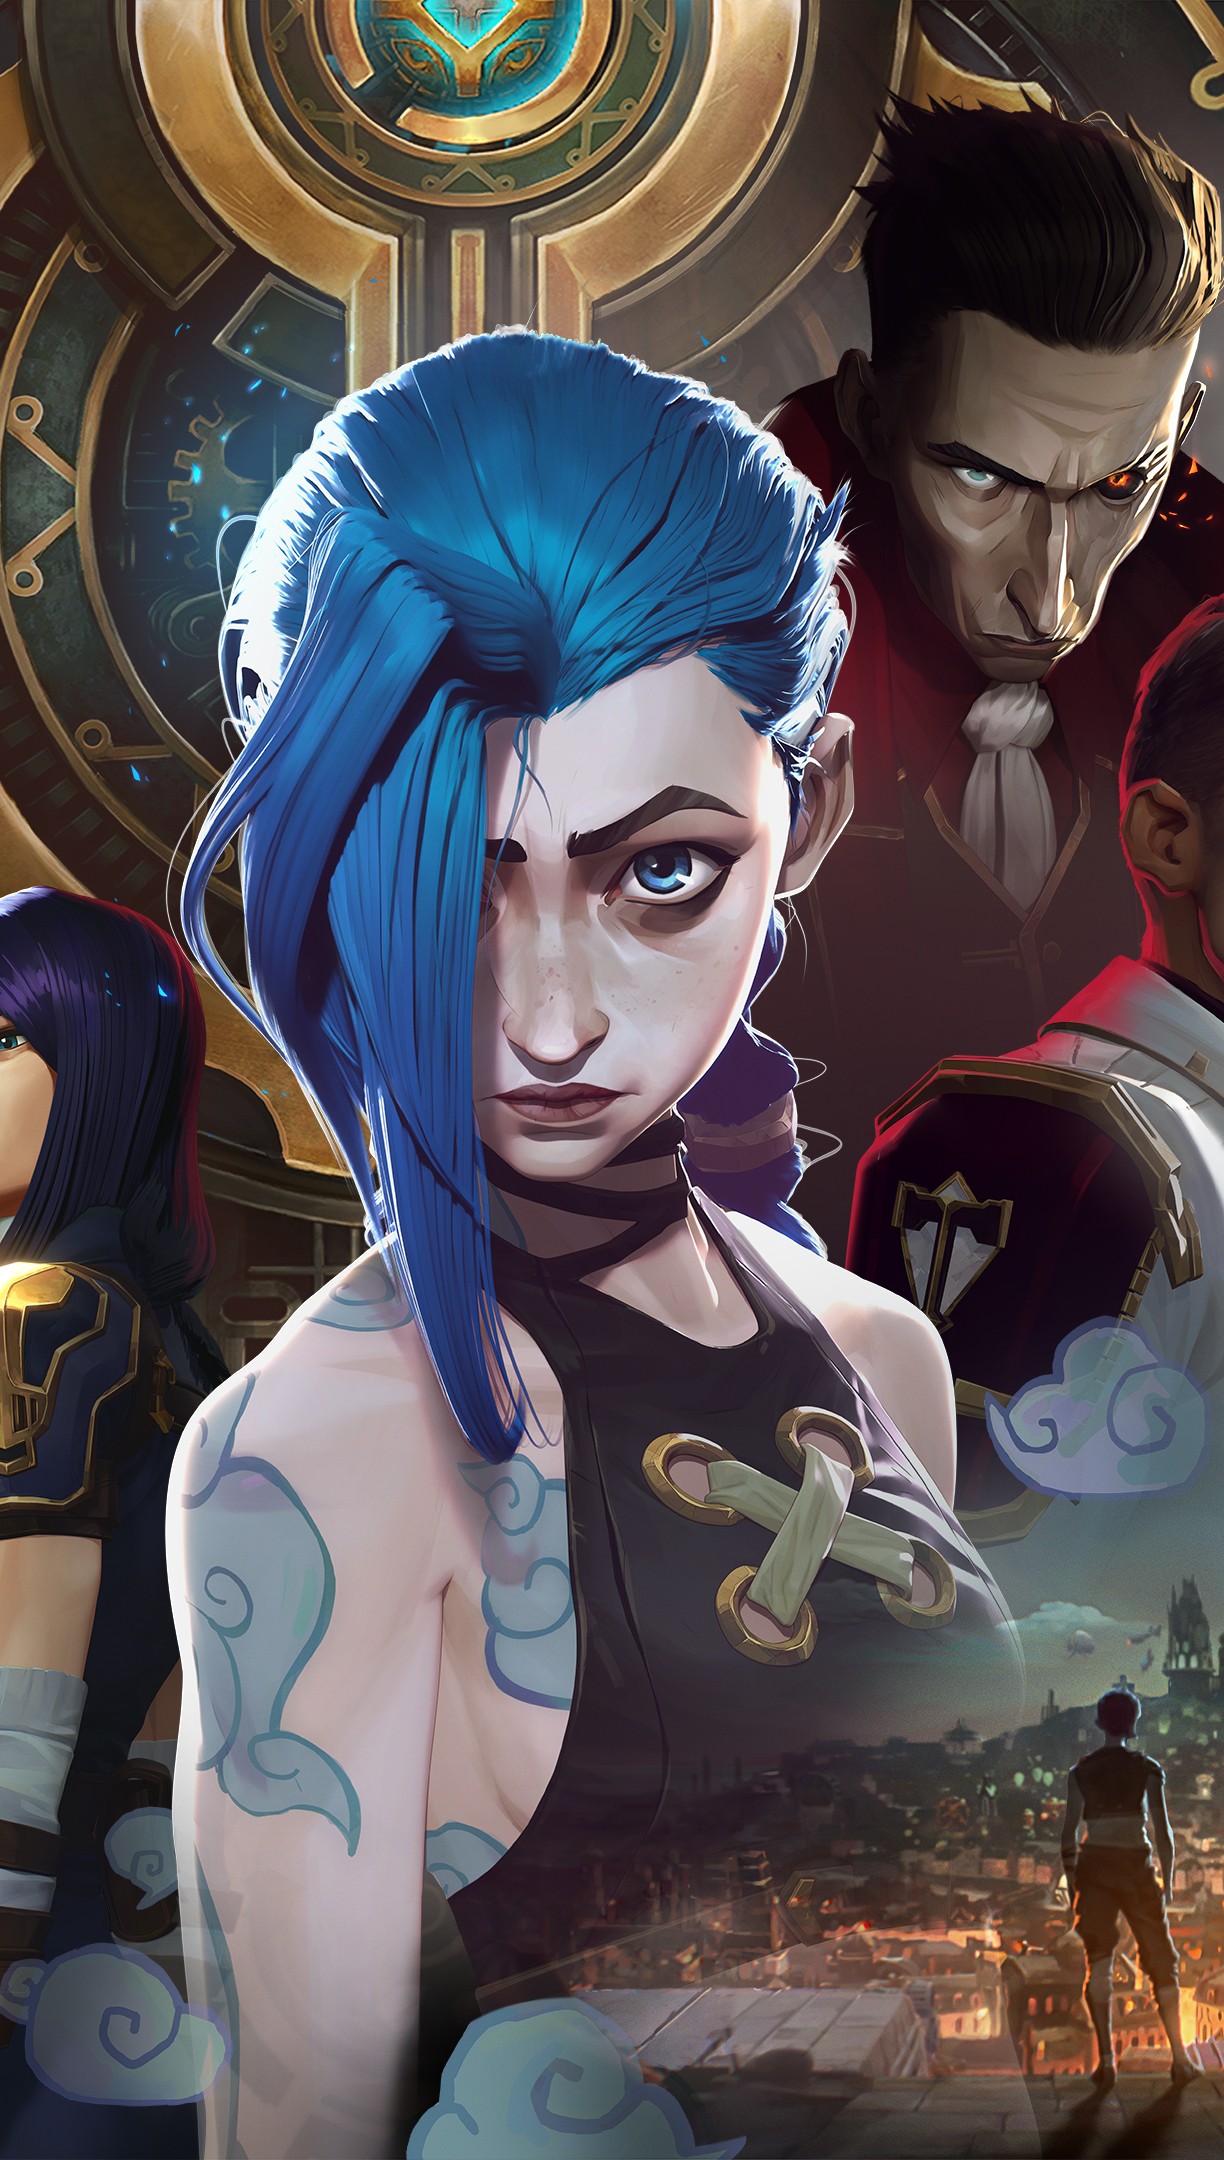 LoL: Riot Games lança novas skins baseadas na série Arcane, da Netflix